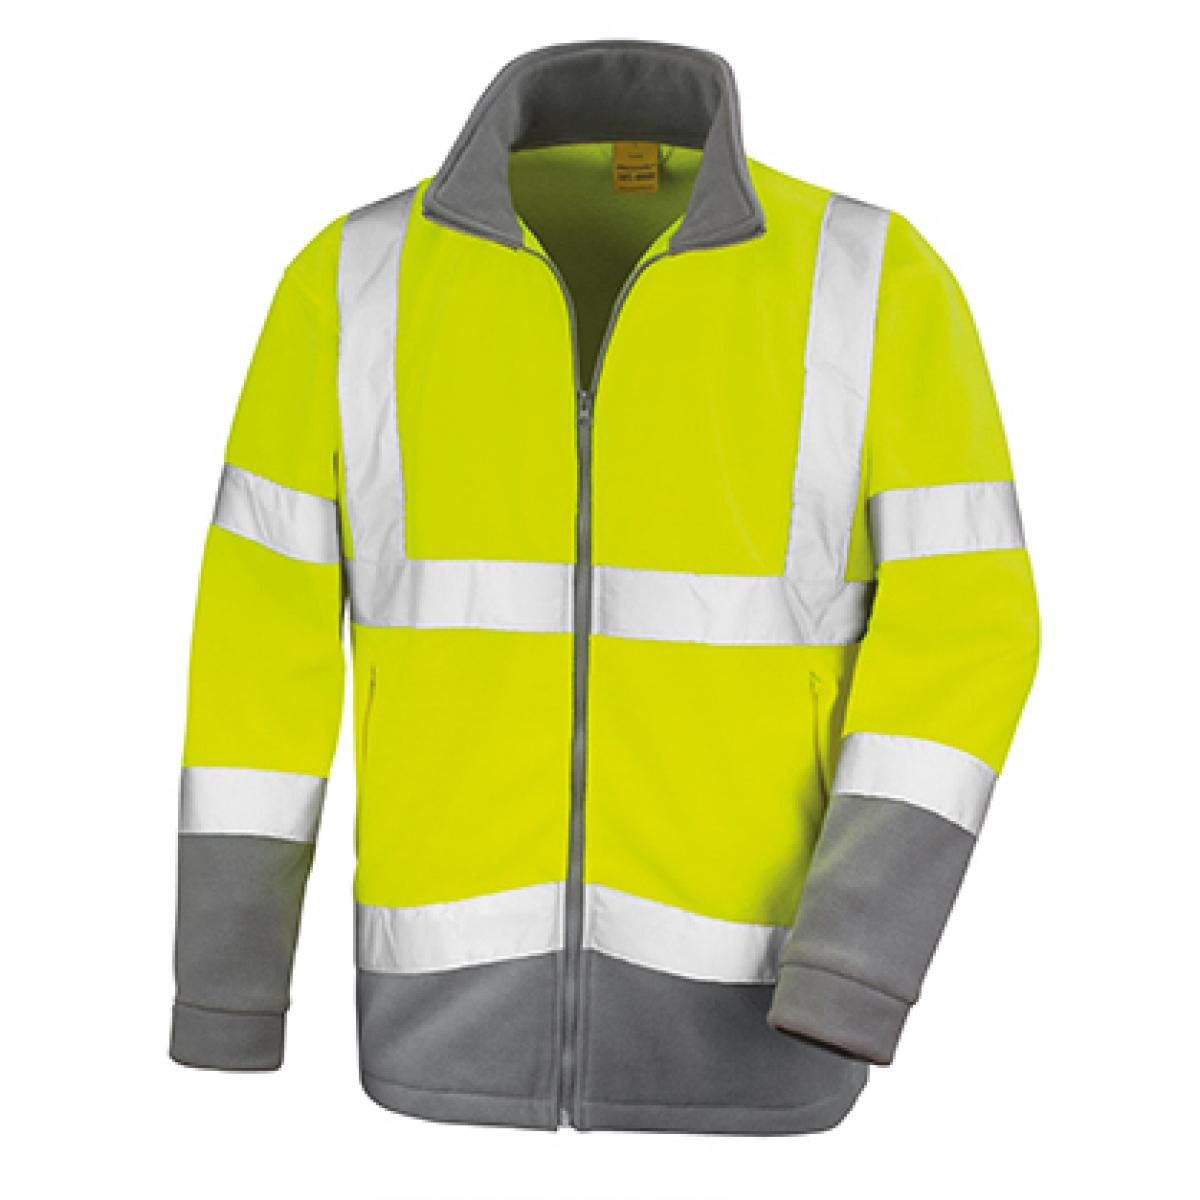 Hersteller: Result Herstellernummer: R329X Artikelbezeichnung: Safety Microfleece Arbeits Jacke Farbe: Fluorescent Yellow/Workguard Grey